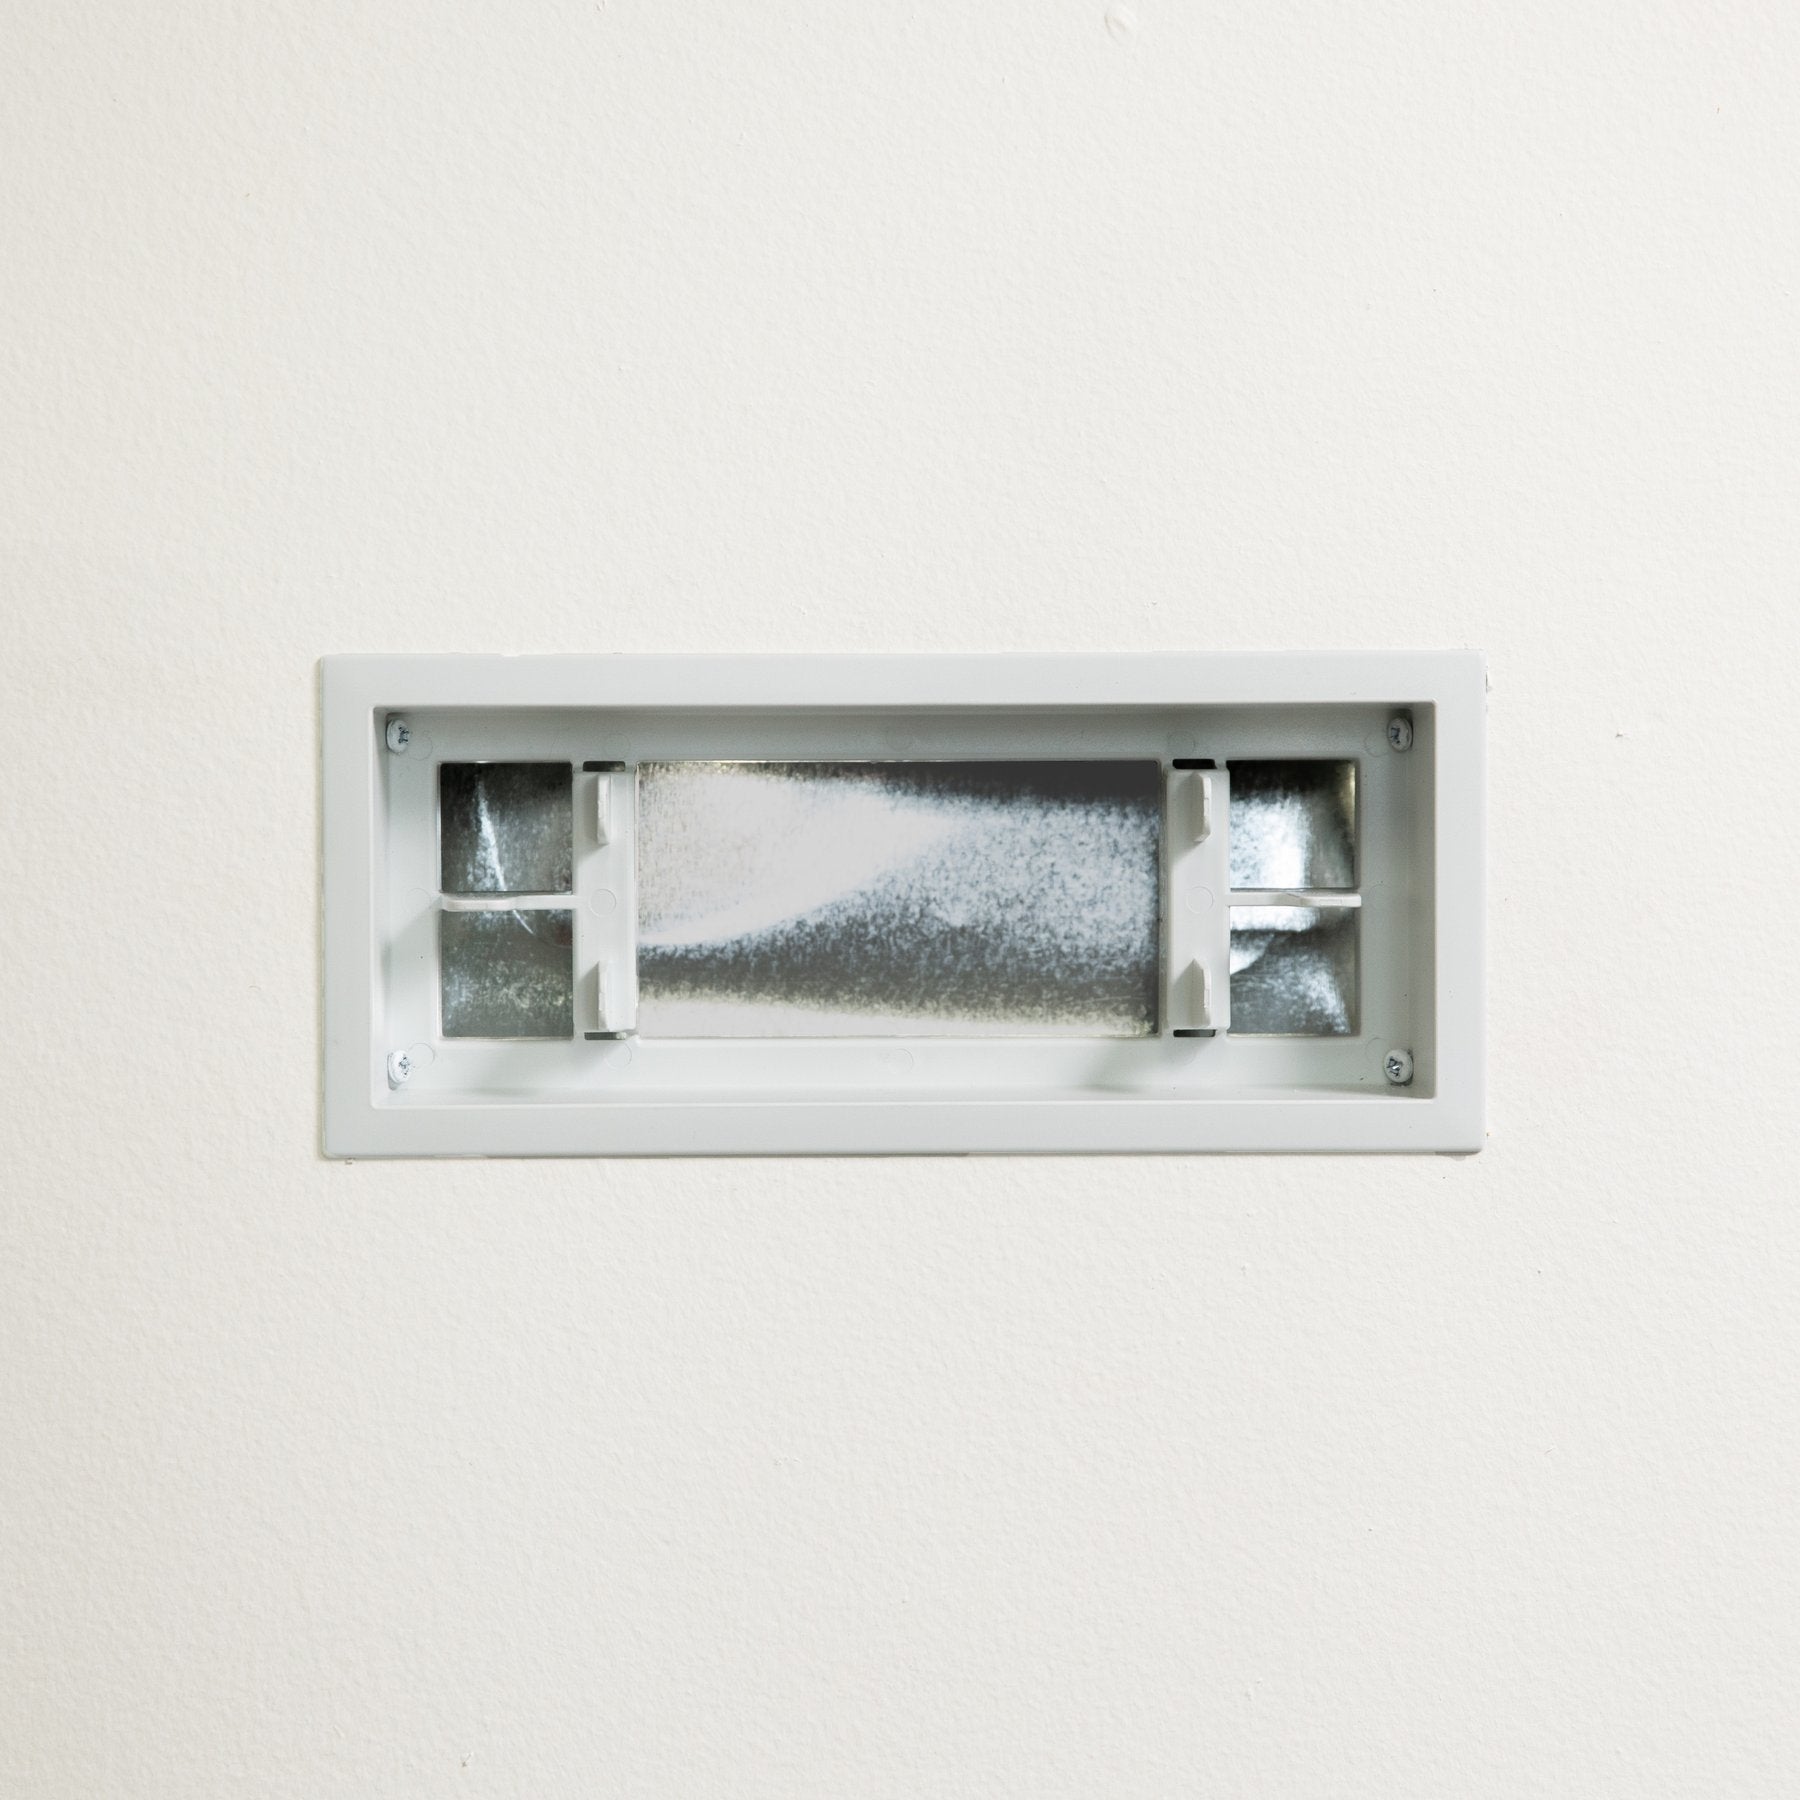 Ventilación de pared con marco Aria [Lite]